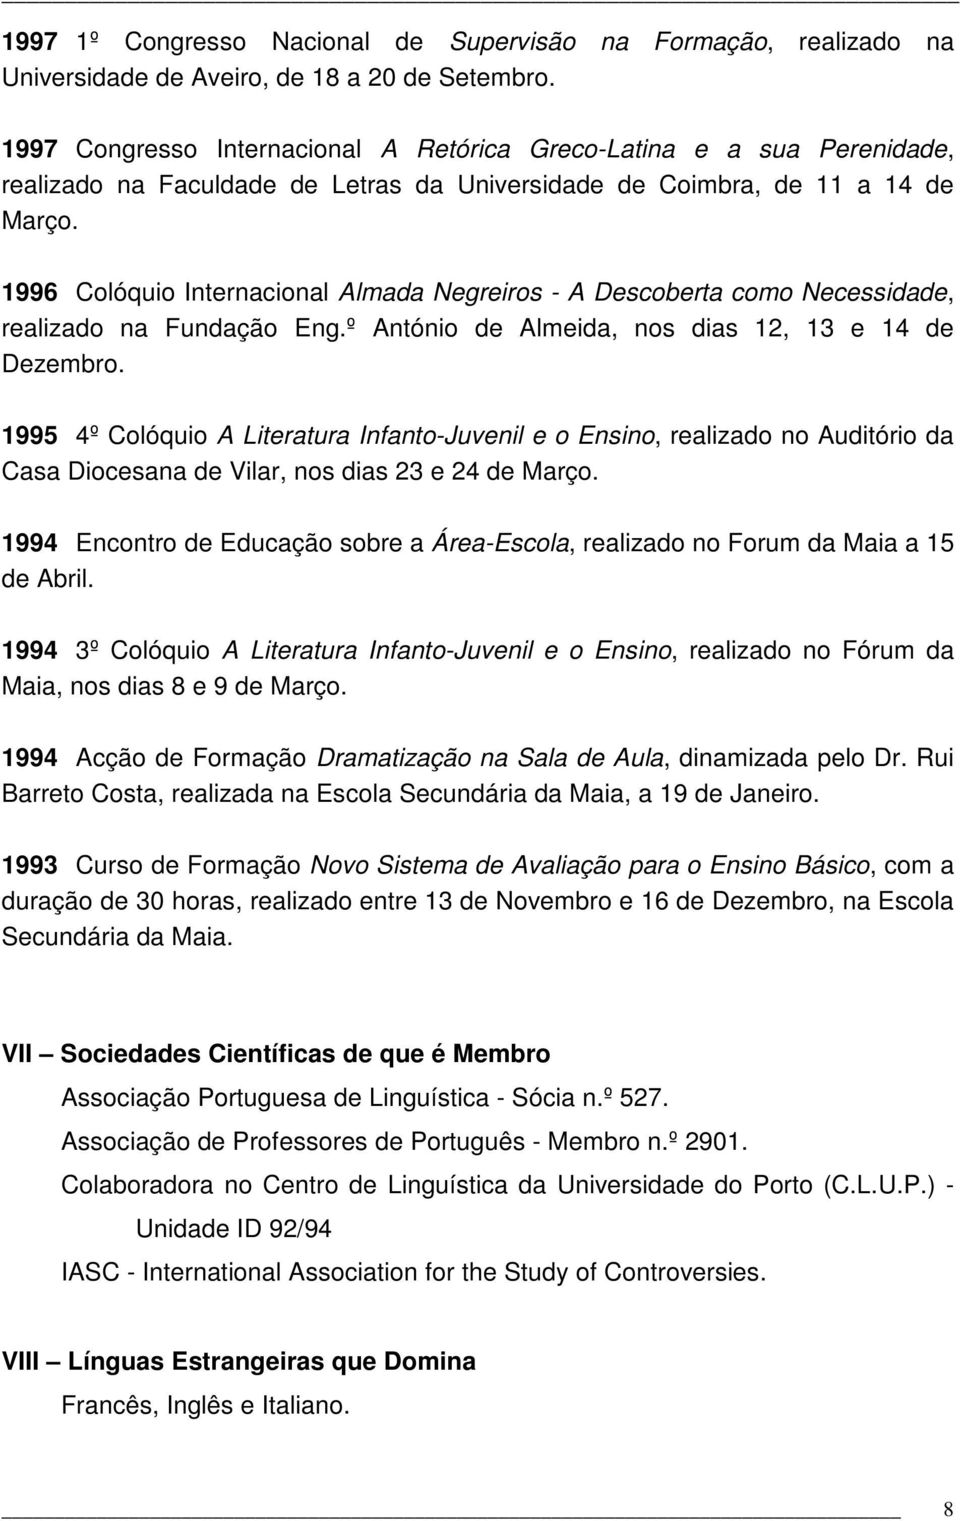 1996 Colóquio Internacional Almada Negreiros - A Descoberta como Necessidade, realizado na Fundação Eng.º António de Almeida, nos dias 12, 13 e 14 de Dezembro.